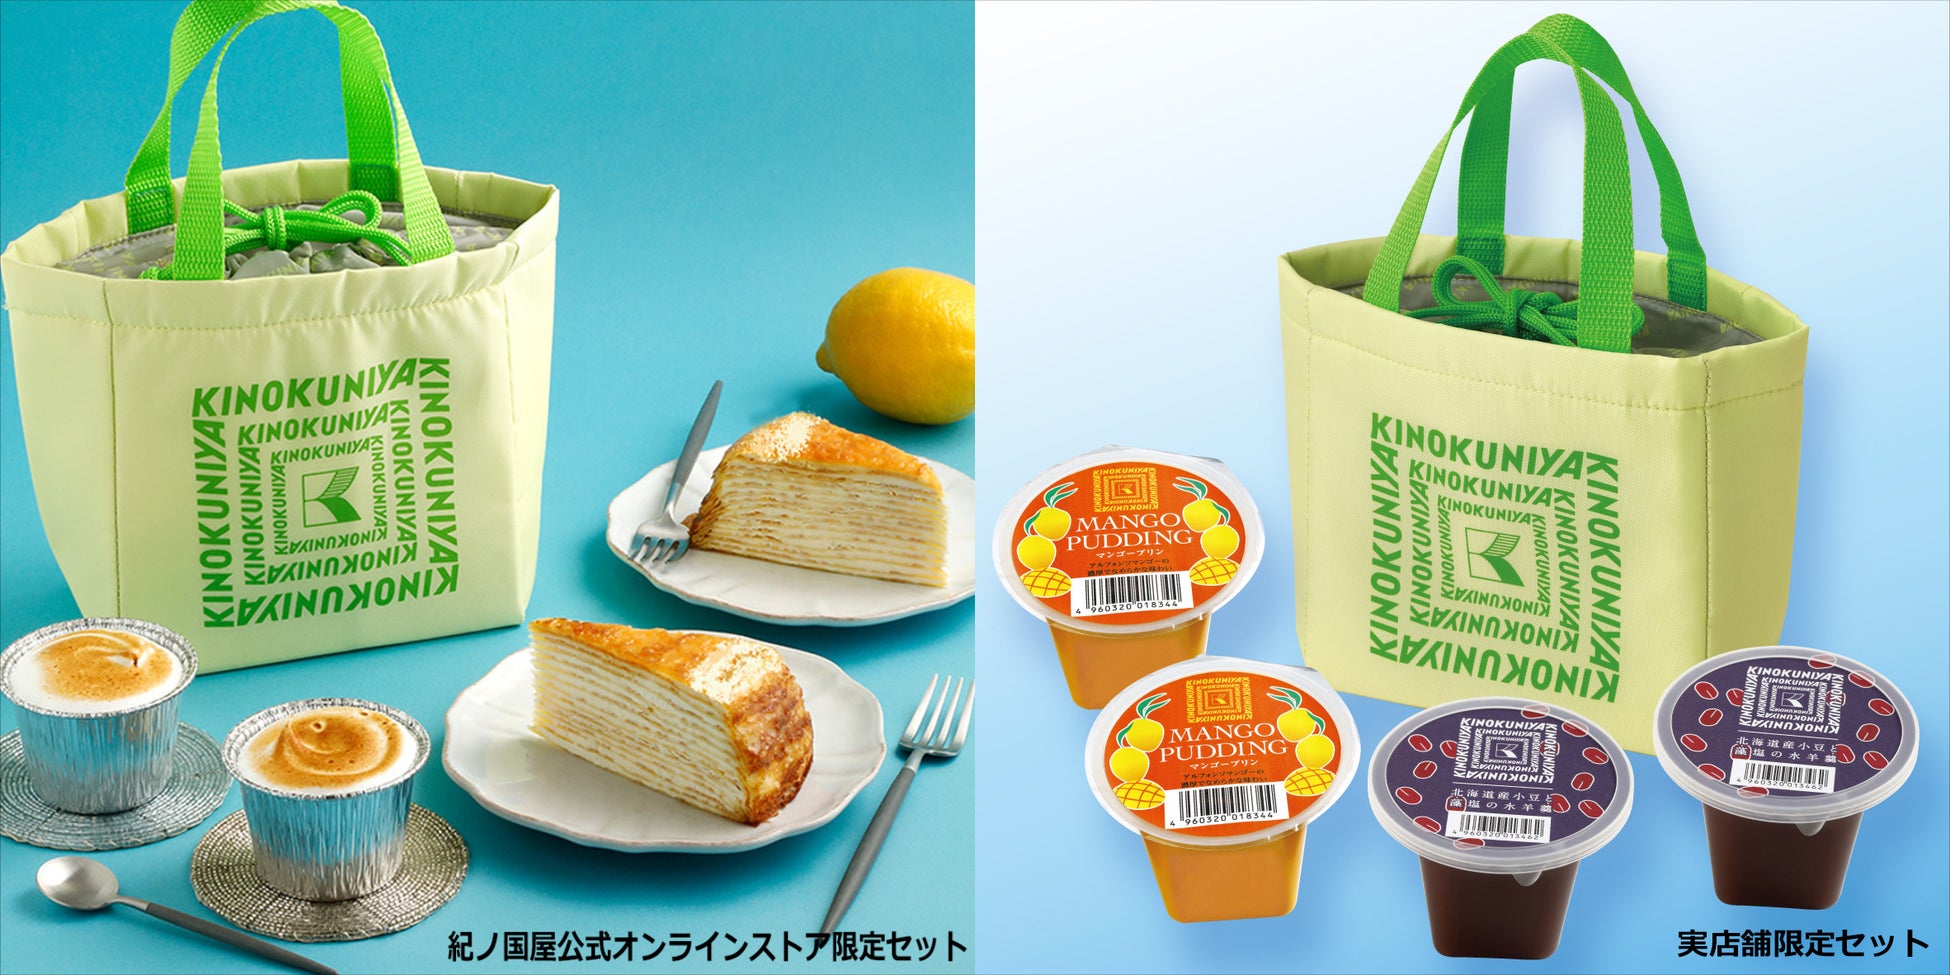 【爽やかな夏のスイーツバッグ】レモンをイメージしたライトイエローのミニ保冷バッグ入りスイーツセット期間限定販売